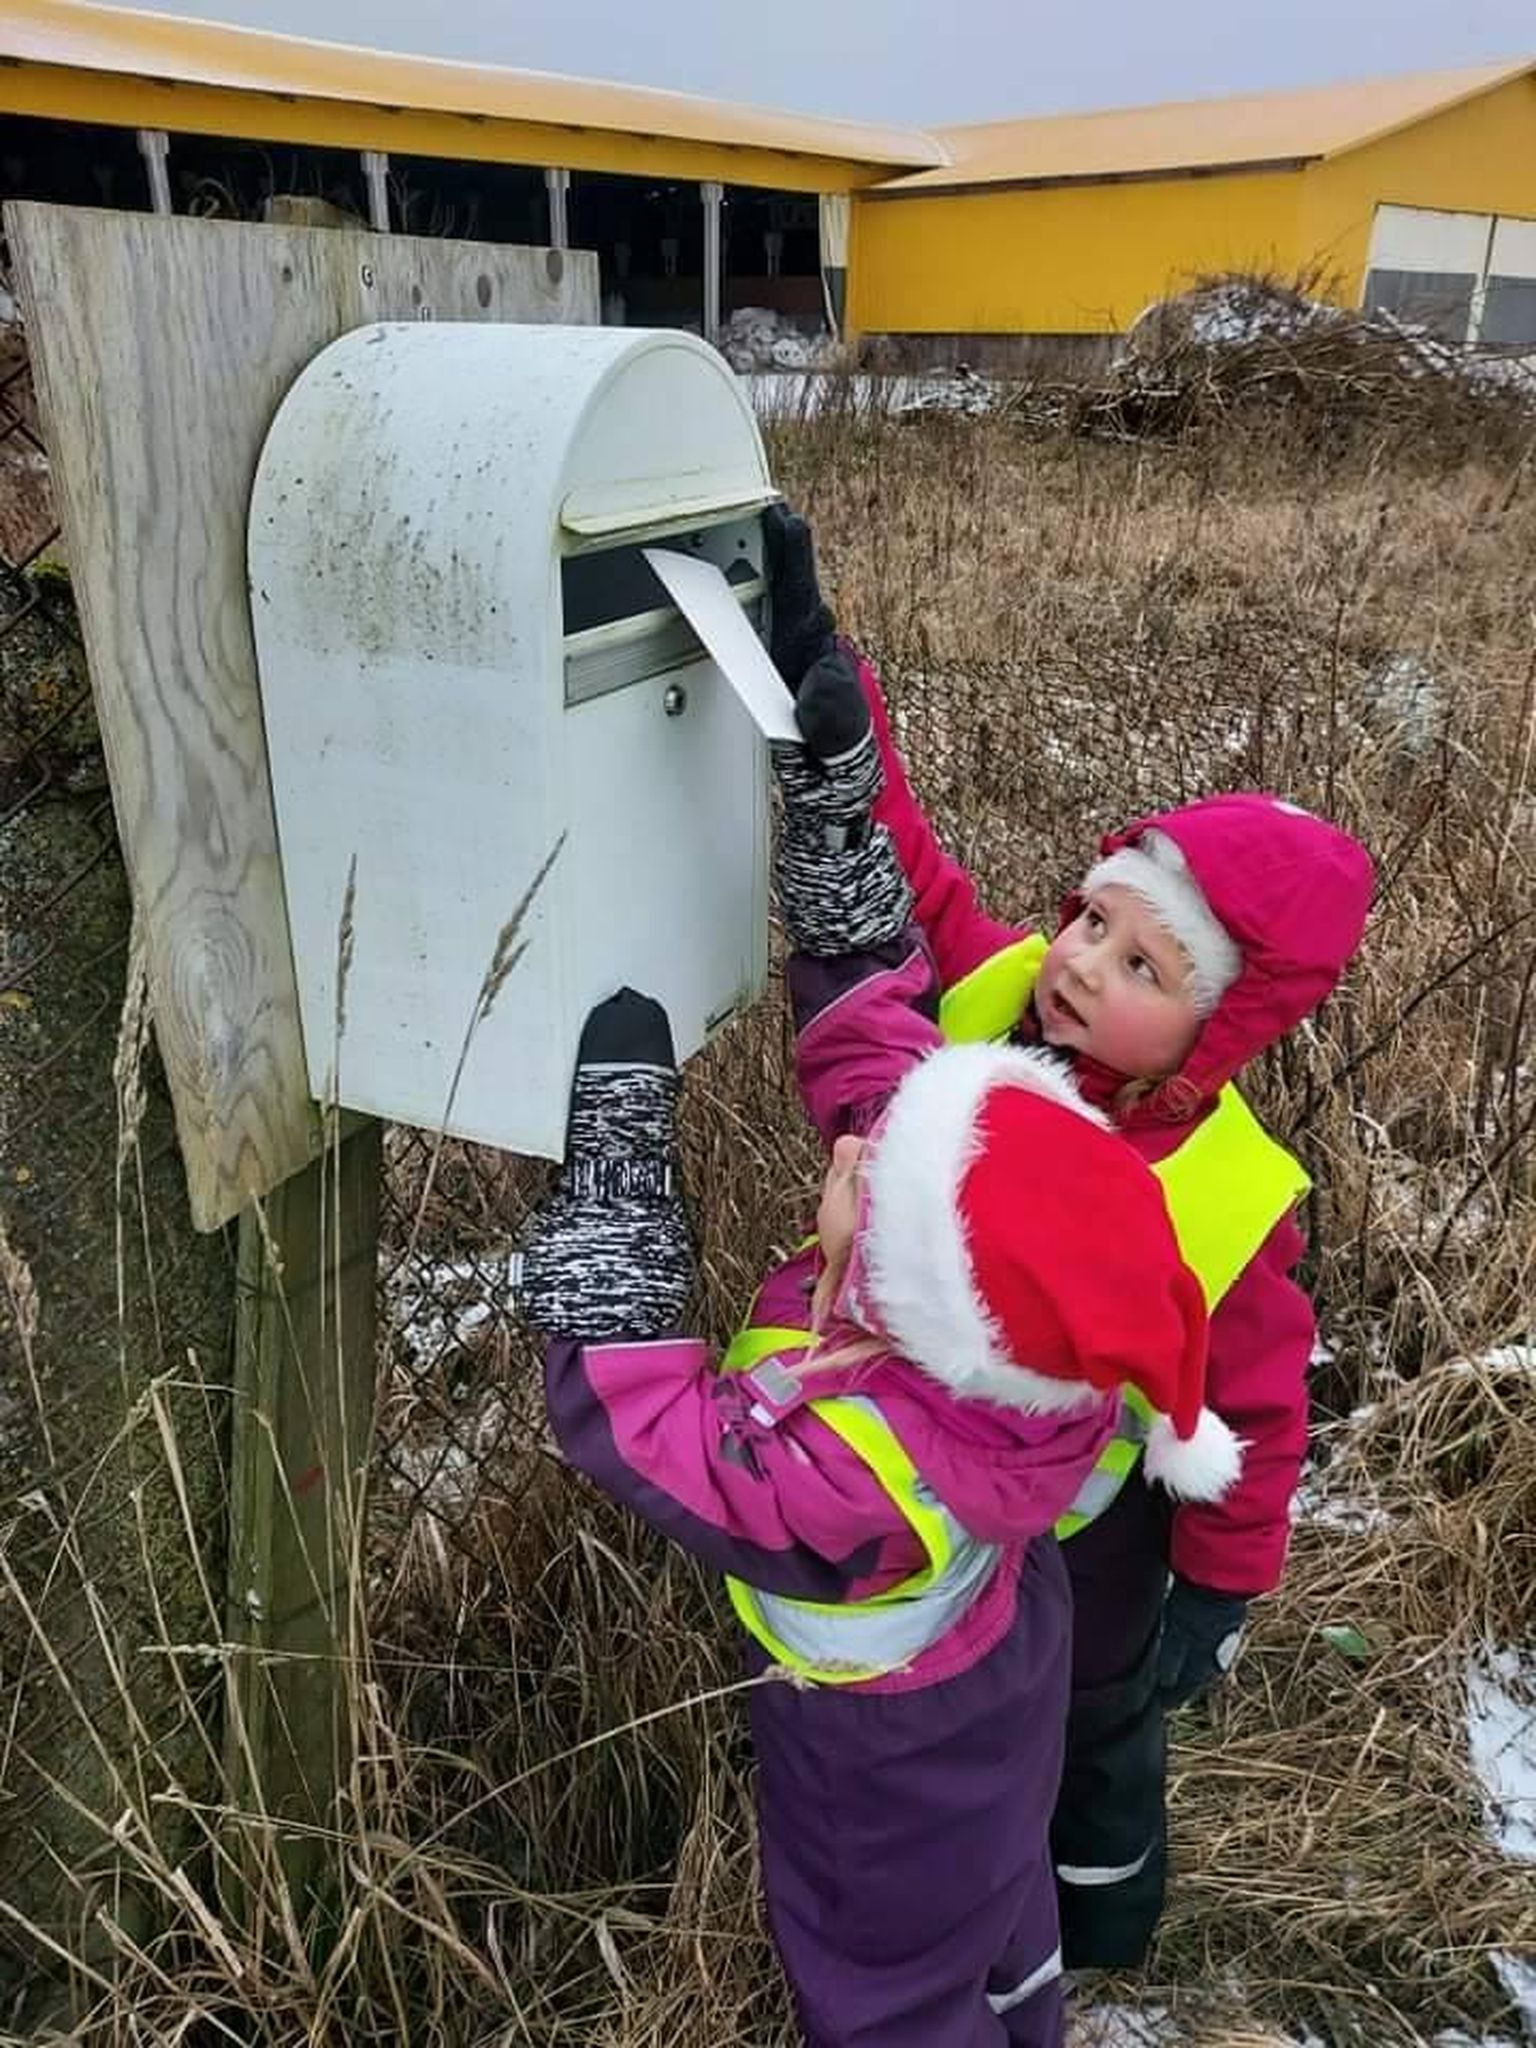 Vao lasteaias meisterdasid lapsed sada jõulukaarti ning aitasid need oma küla inimeste postkastidesse viia.